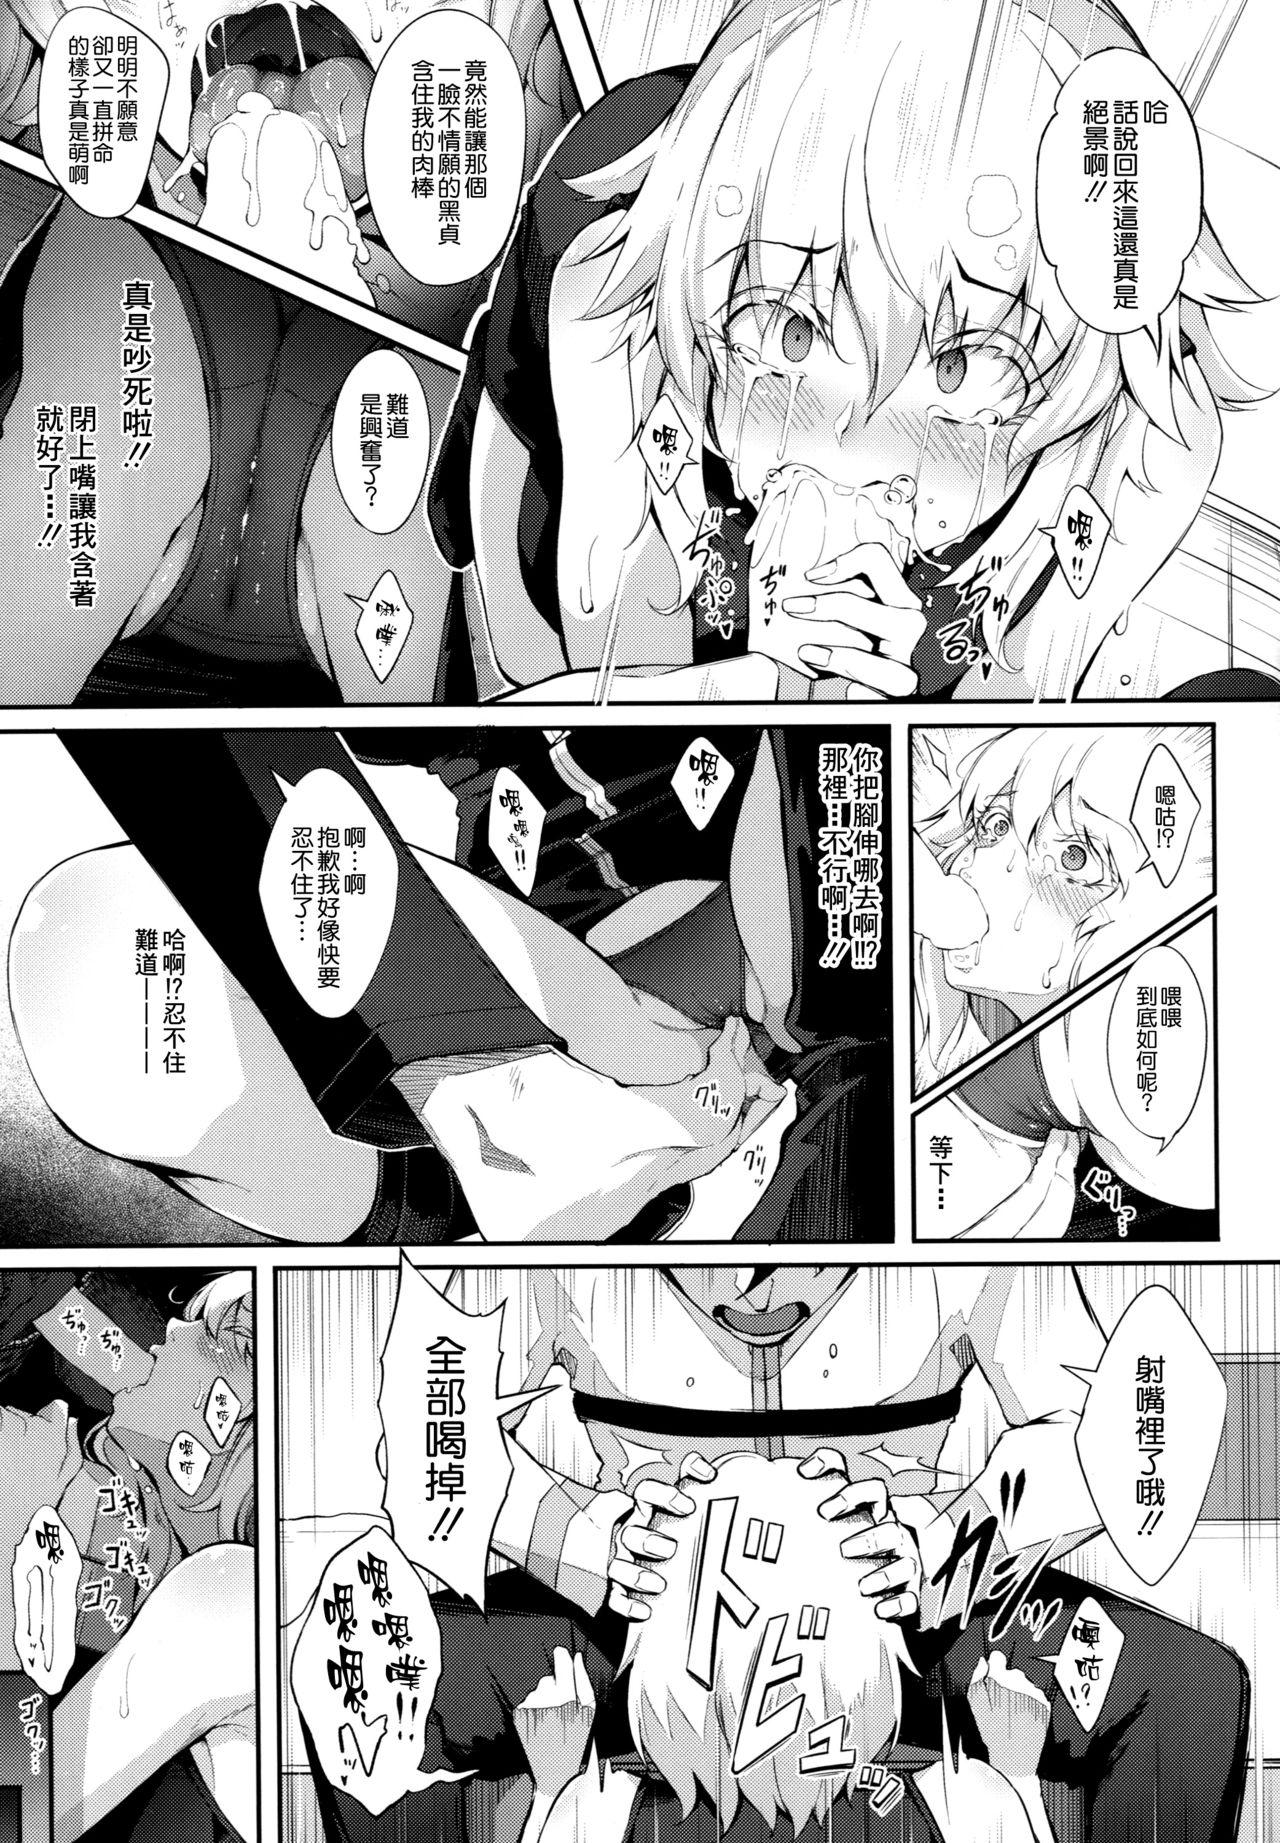 Gayemo Watashi wa Reiju nanka ni Makenaishi Zettai Bonyuu mo Dasanai!! - Fate grand order Vibrator - Page 7